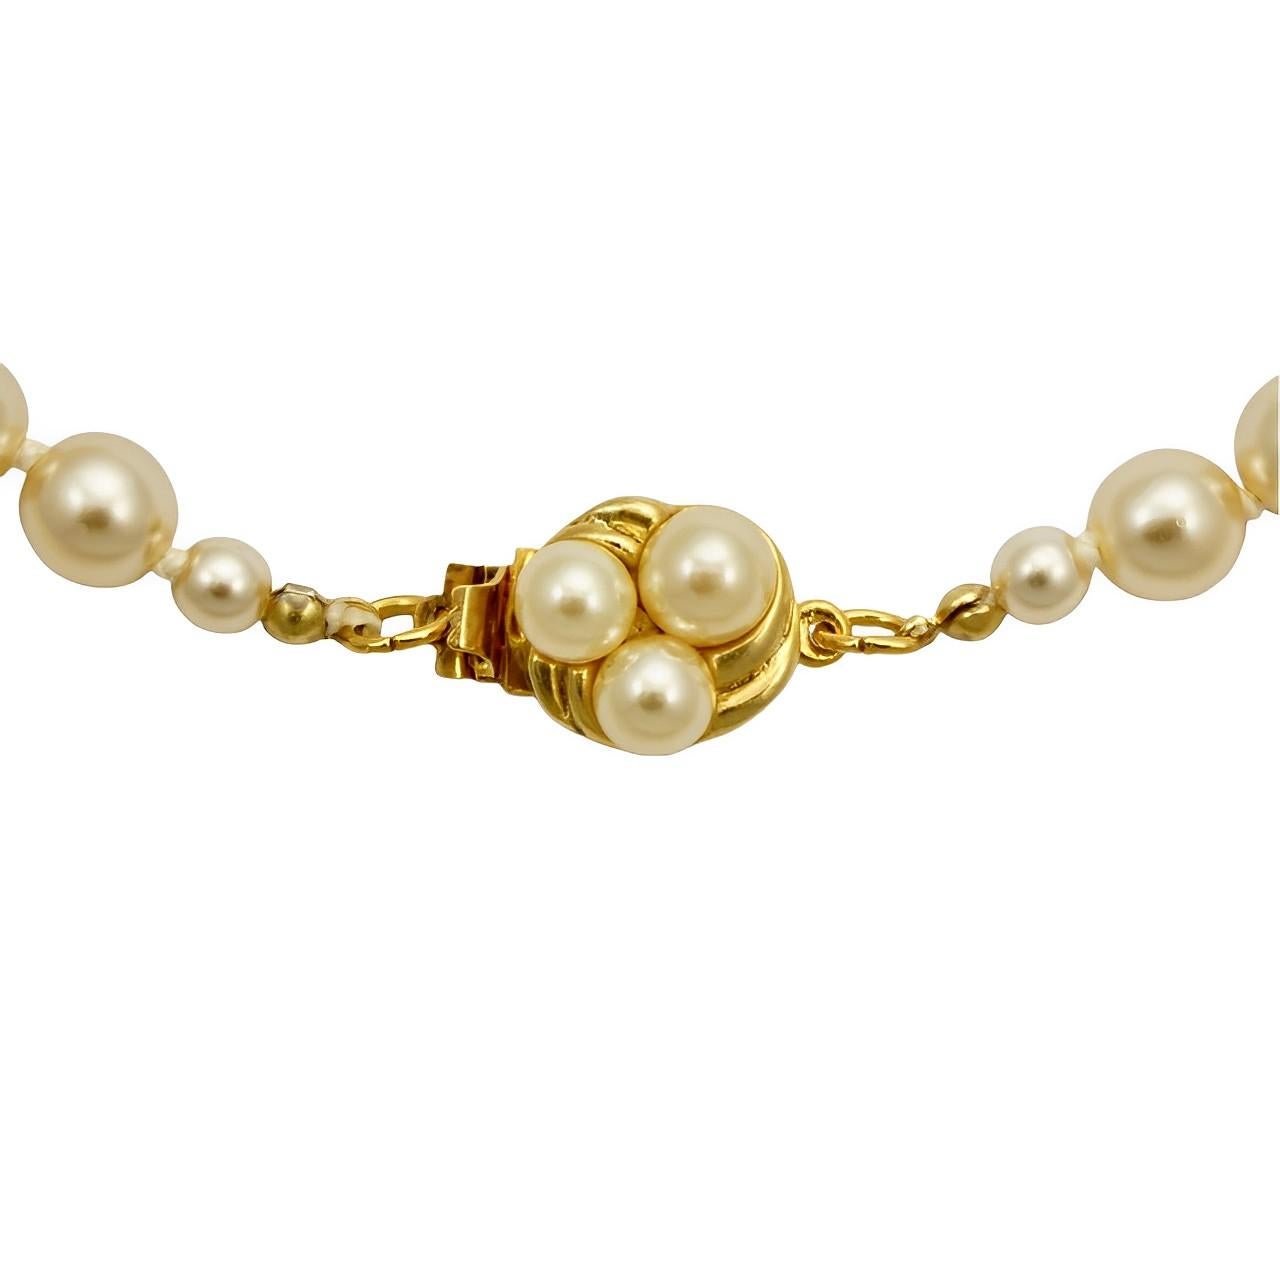 Magnifique long collier de perles de verre crème, doté d'un fermoir rond à motif strié plaqué or, serti de trois perles. Les perles lustrées sont nouées entre chaque perle. Longueur 65 cm. Les perles mesurent 8 mm. Le collier est en très bon